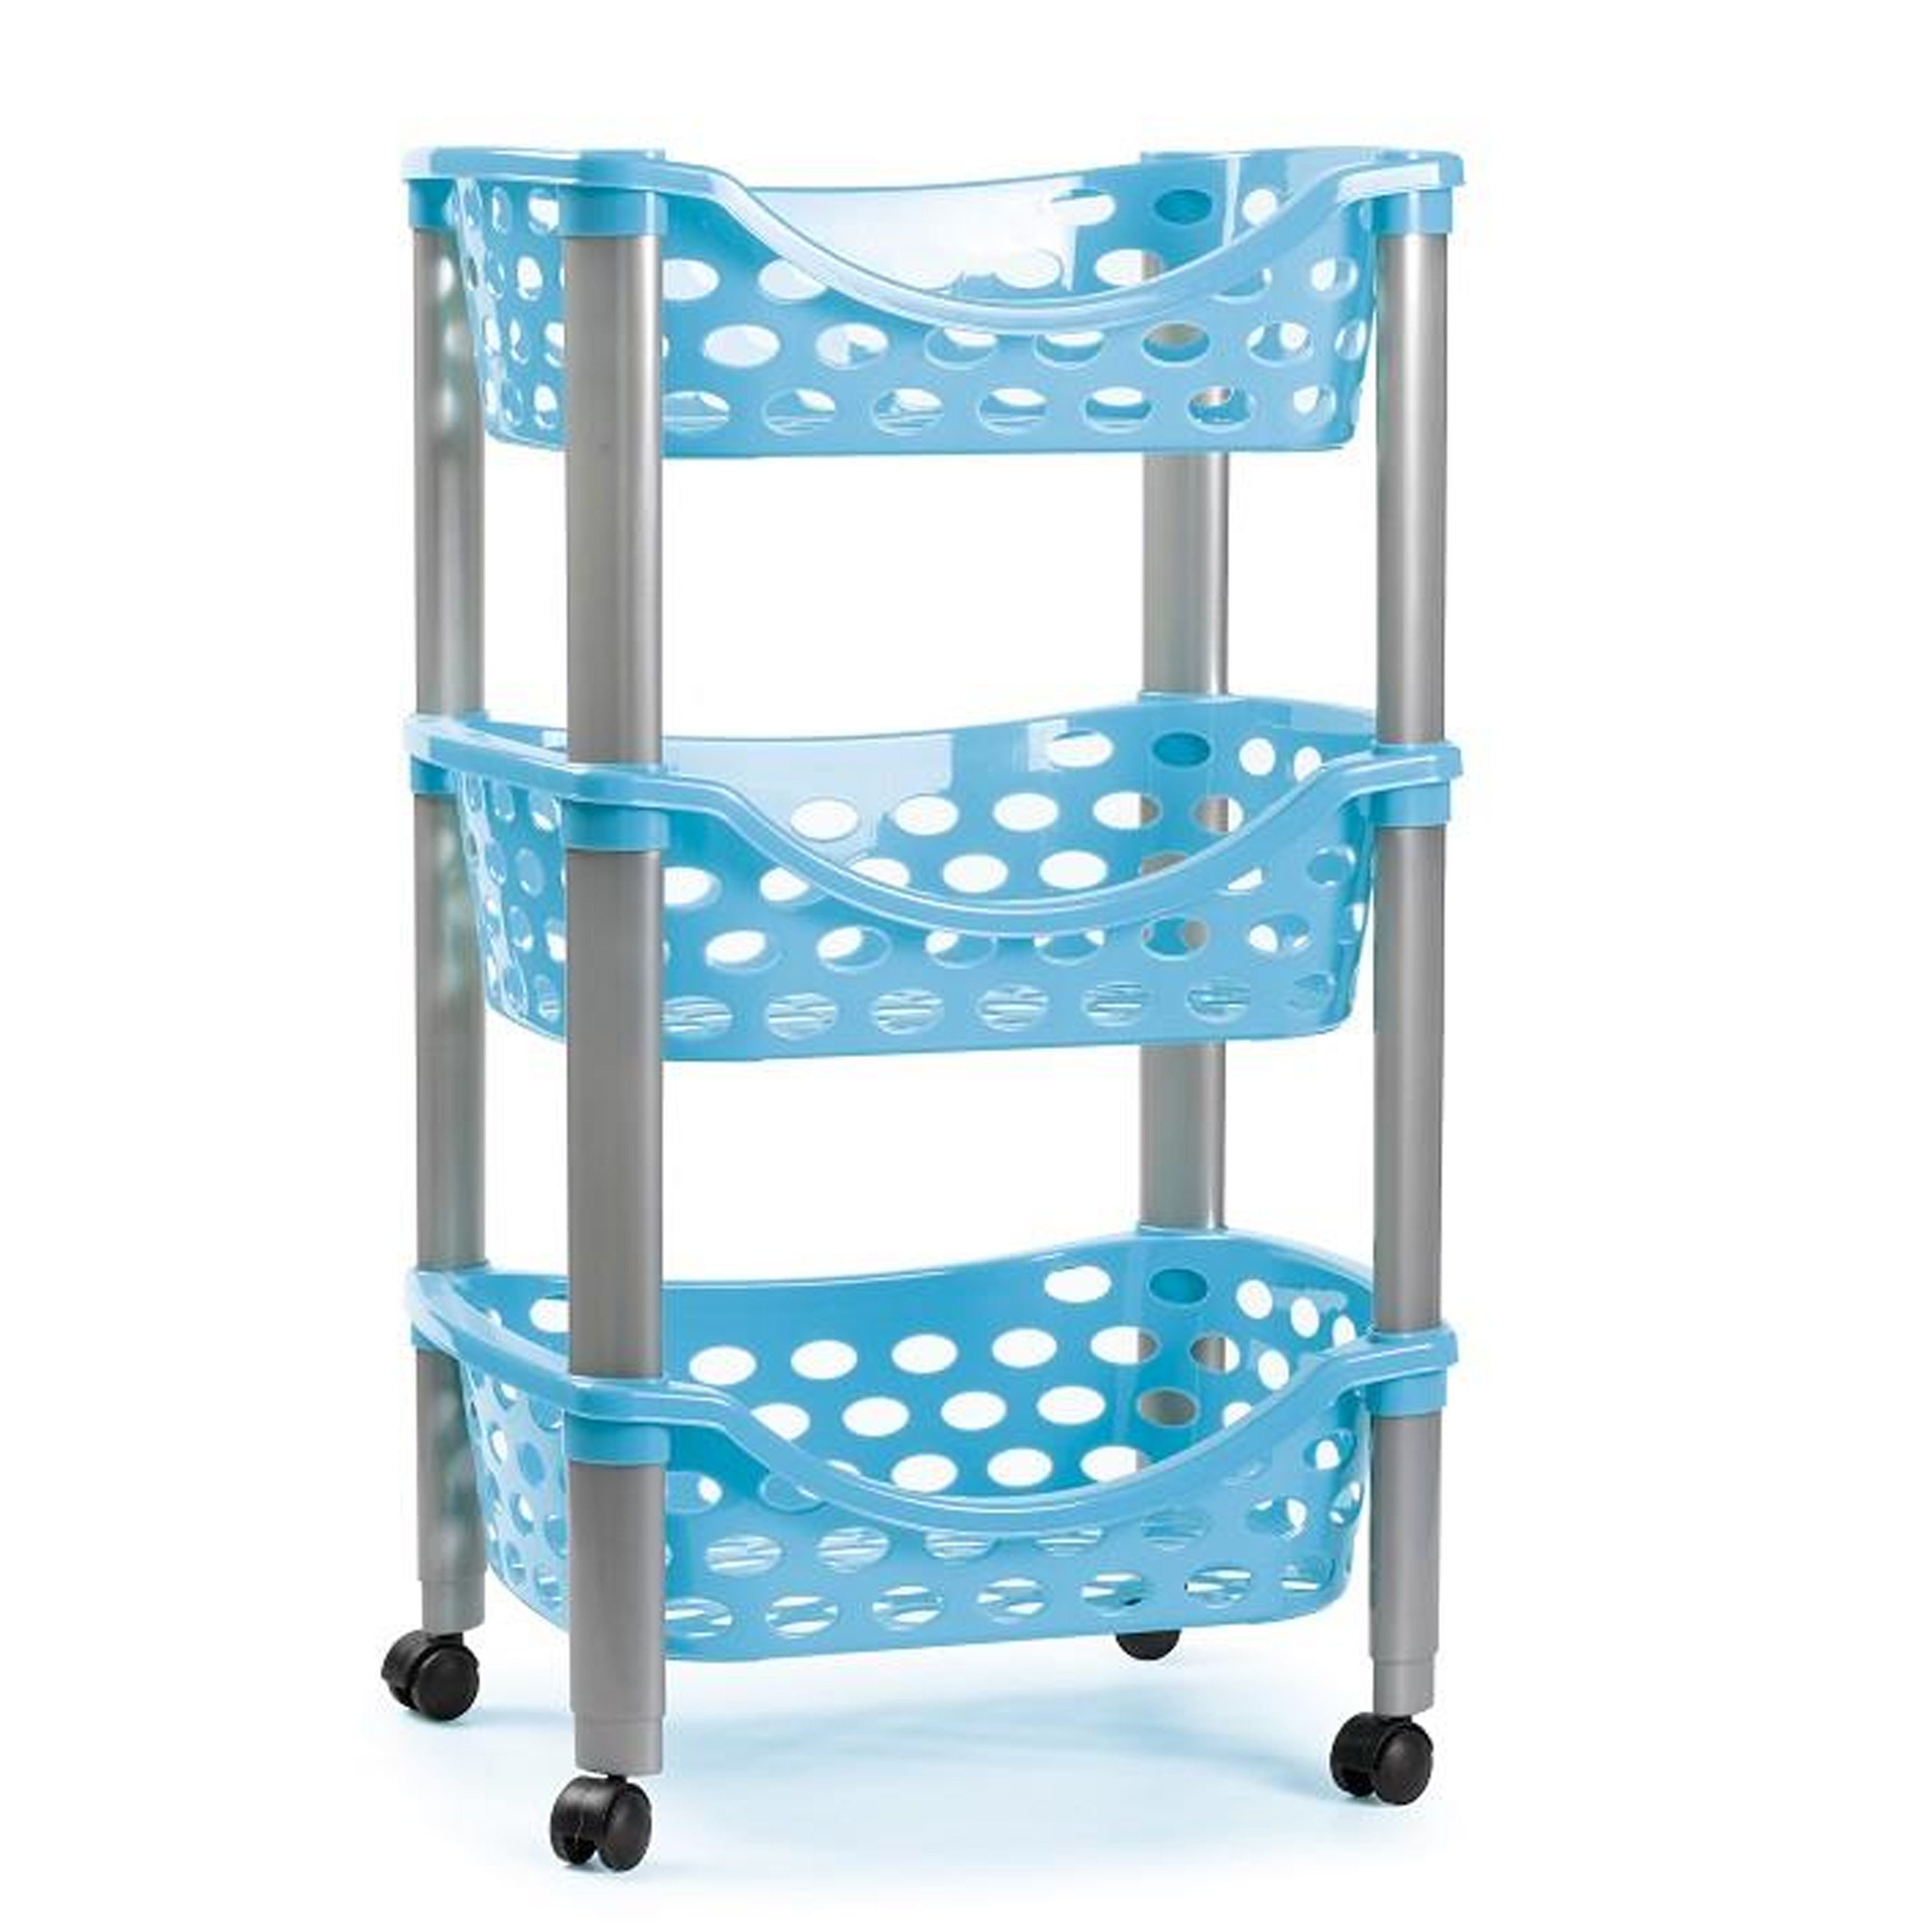 Keukentrolley-roltafel 3 laags kunststof blauw 40 x 65 cm